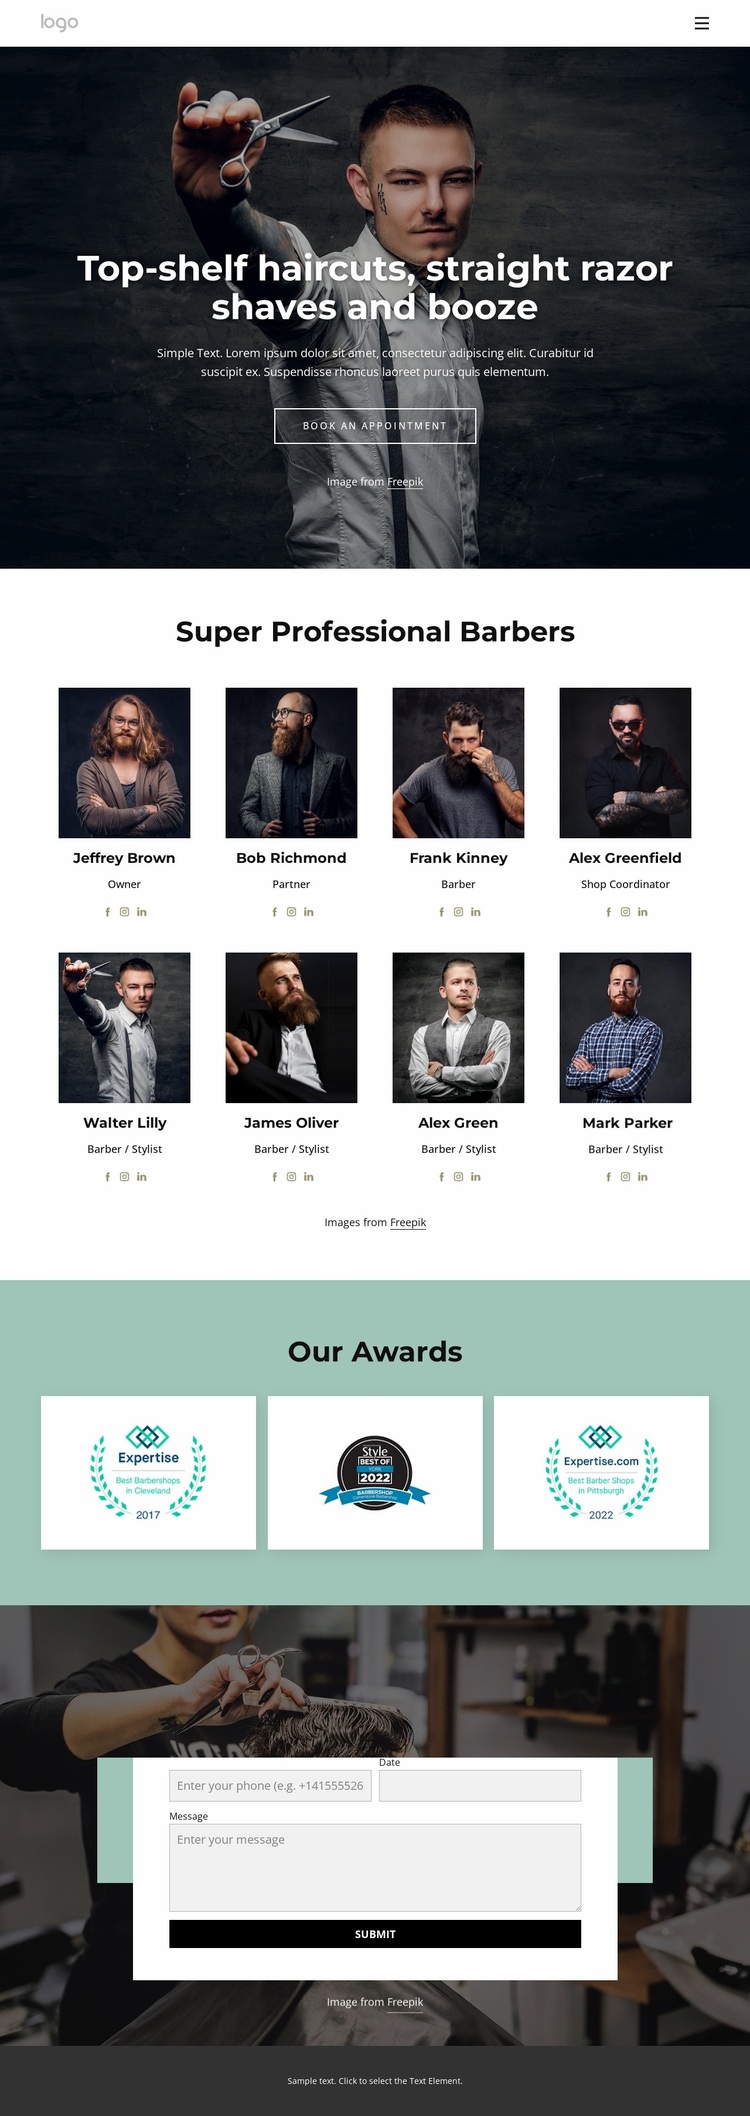 Barber team Website Design